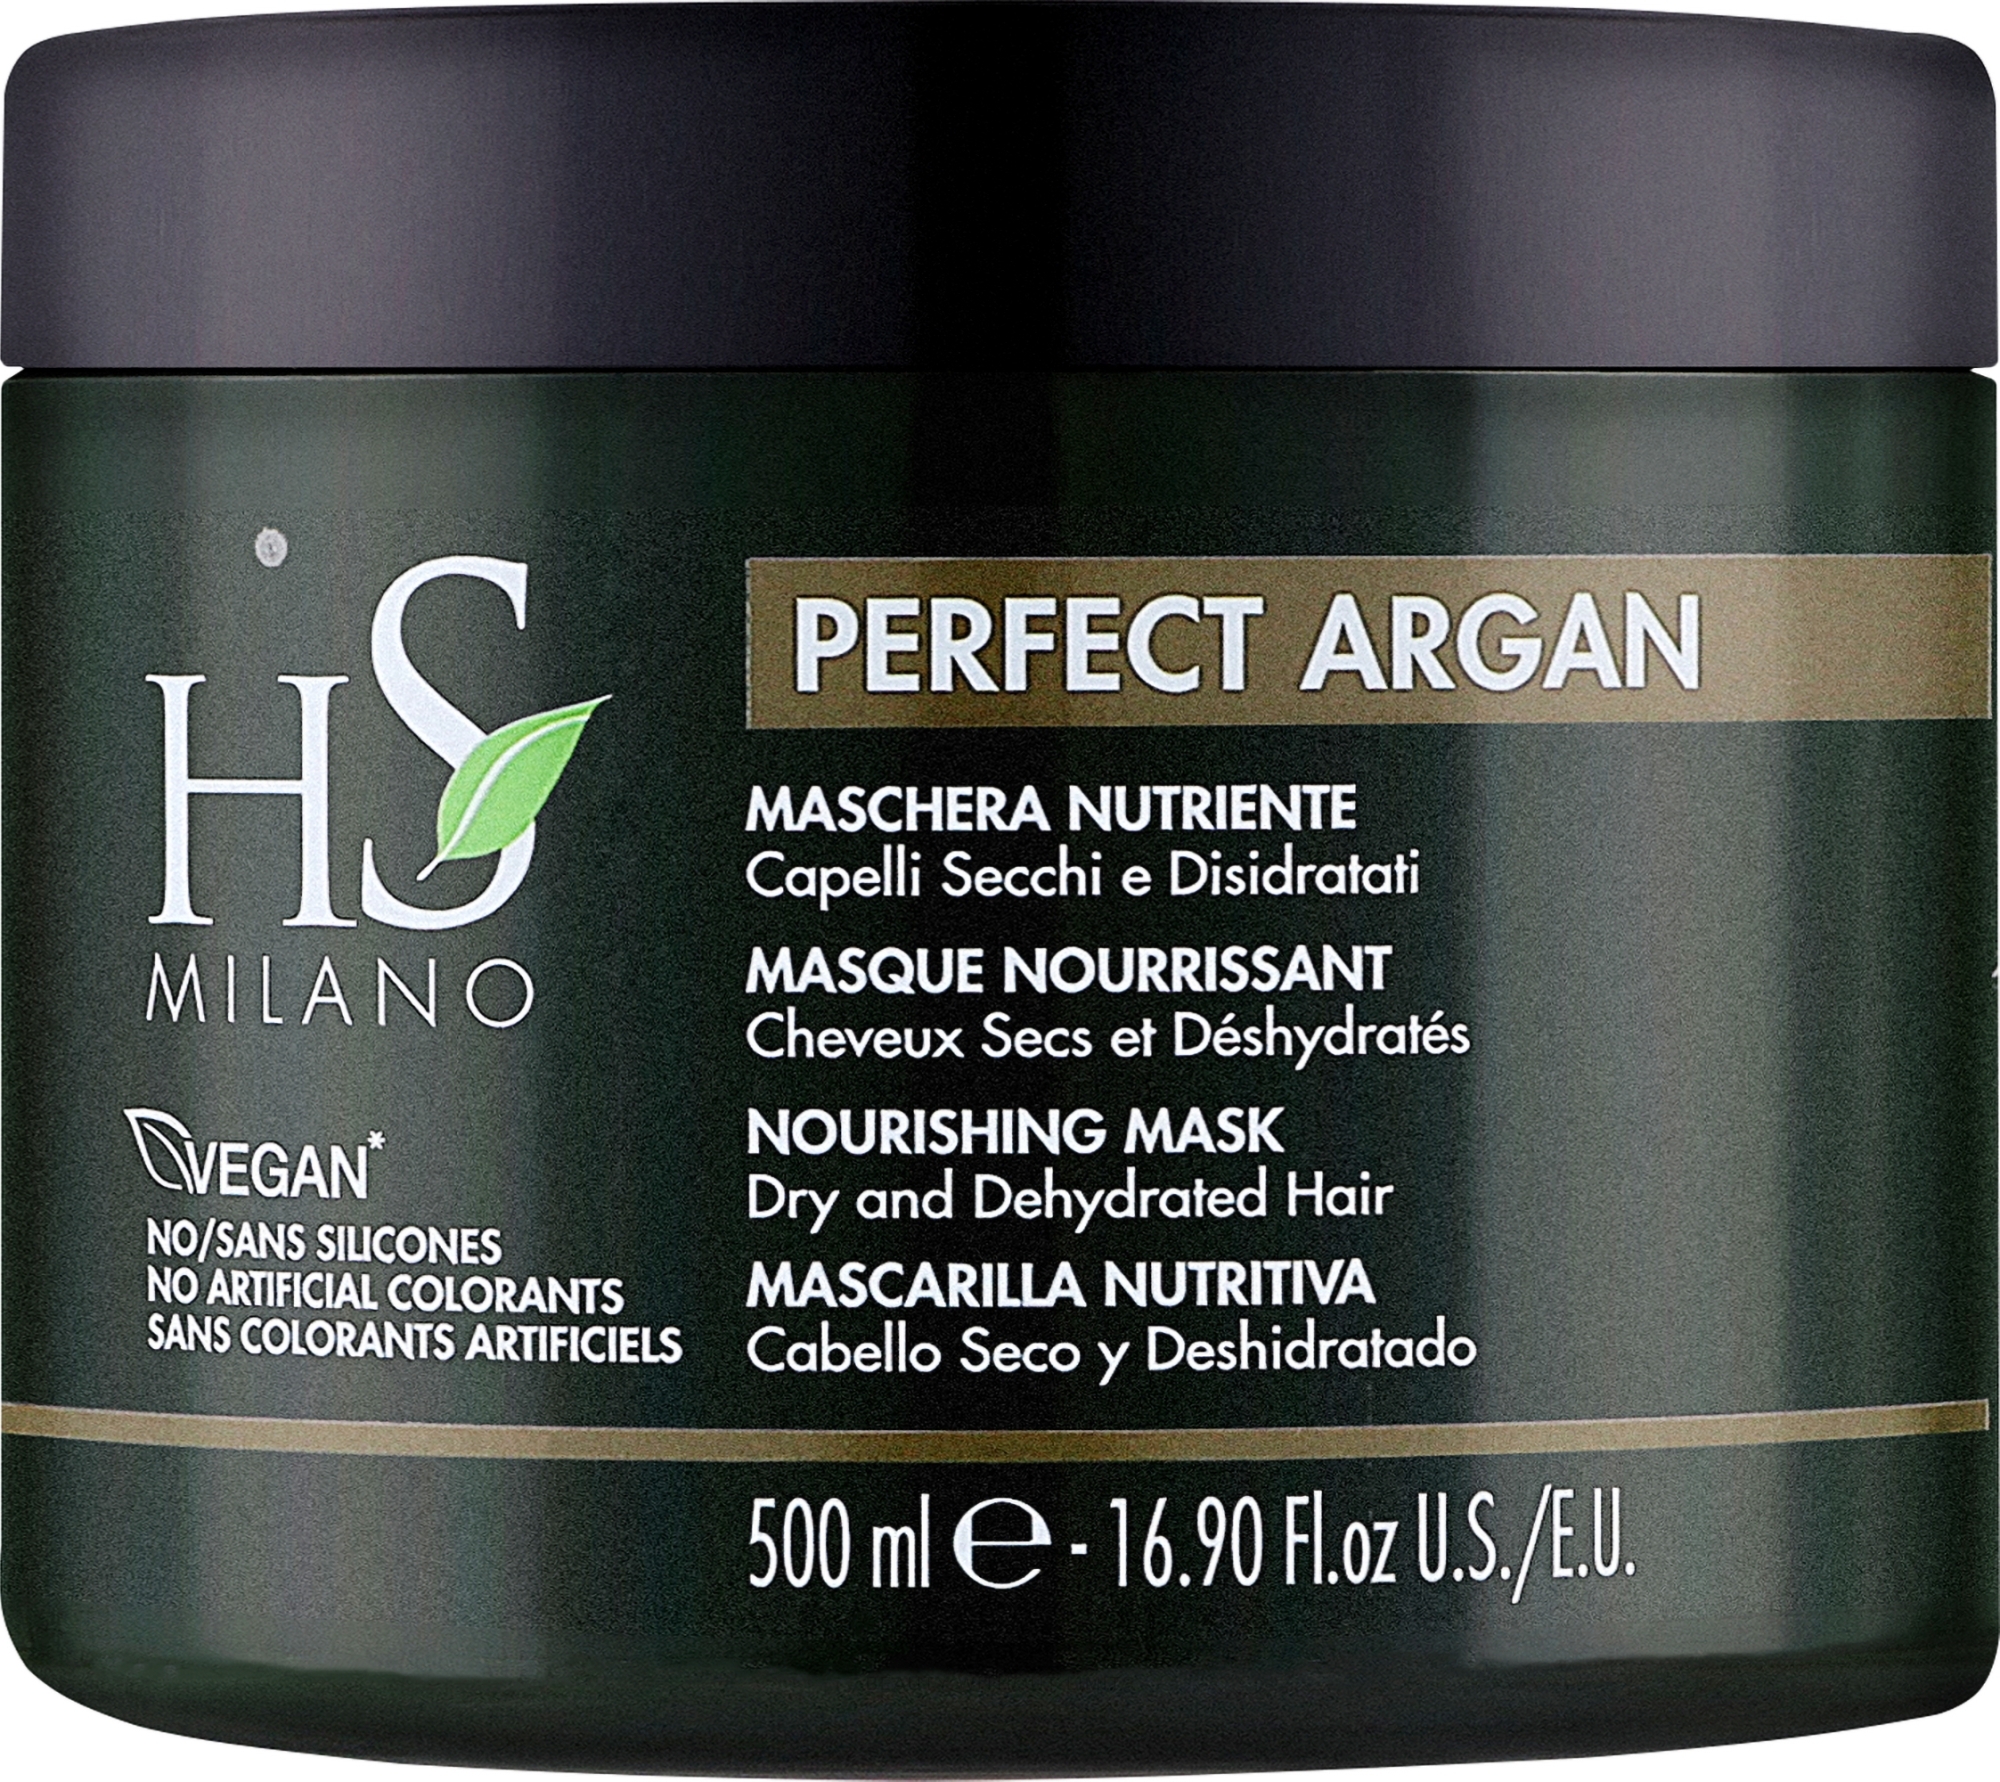 Питательная маска для волос - HS Milano Perfect Argan Nourishing Mask  — фото 500ml